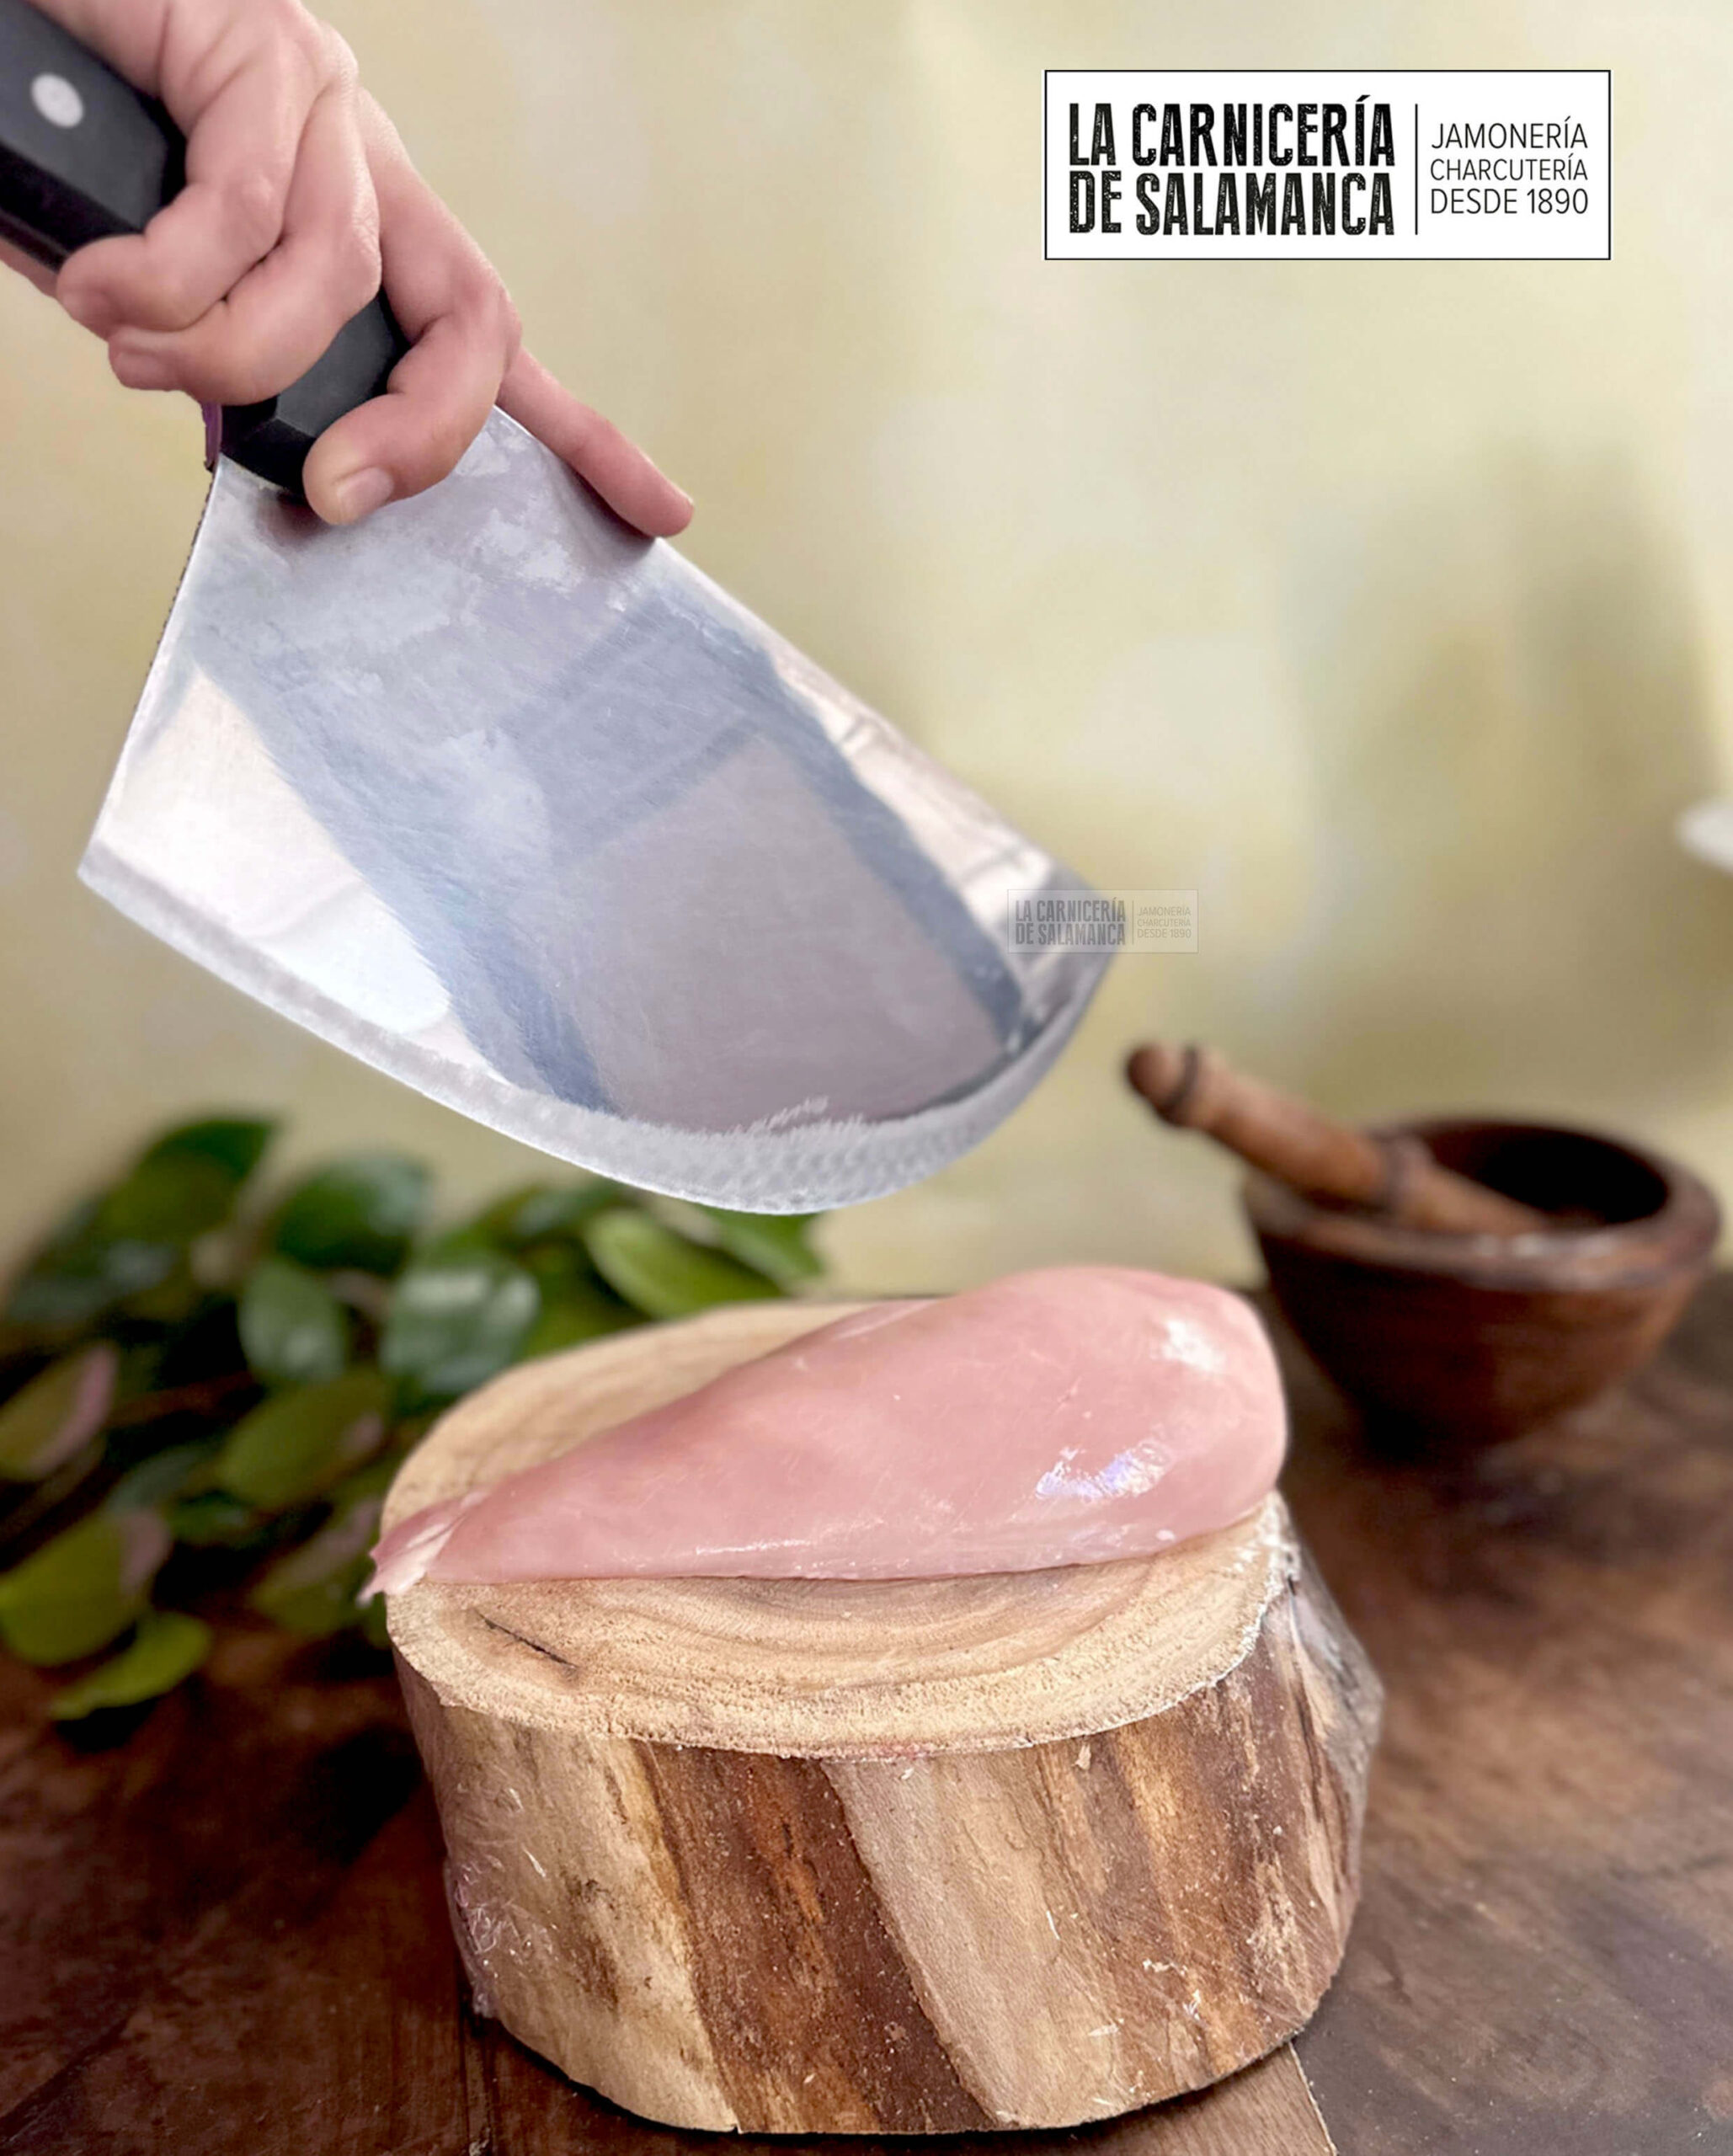 Pechuga de pollo para filetear. Carne disponible para comprar online en La Carnicería de Salamanca